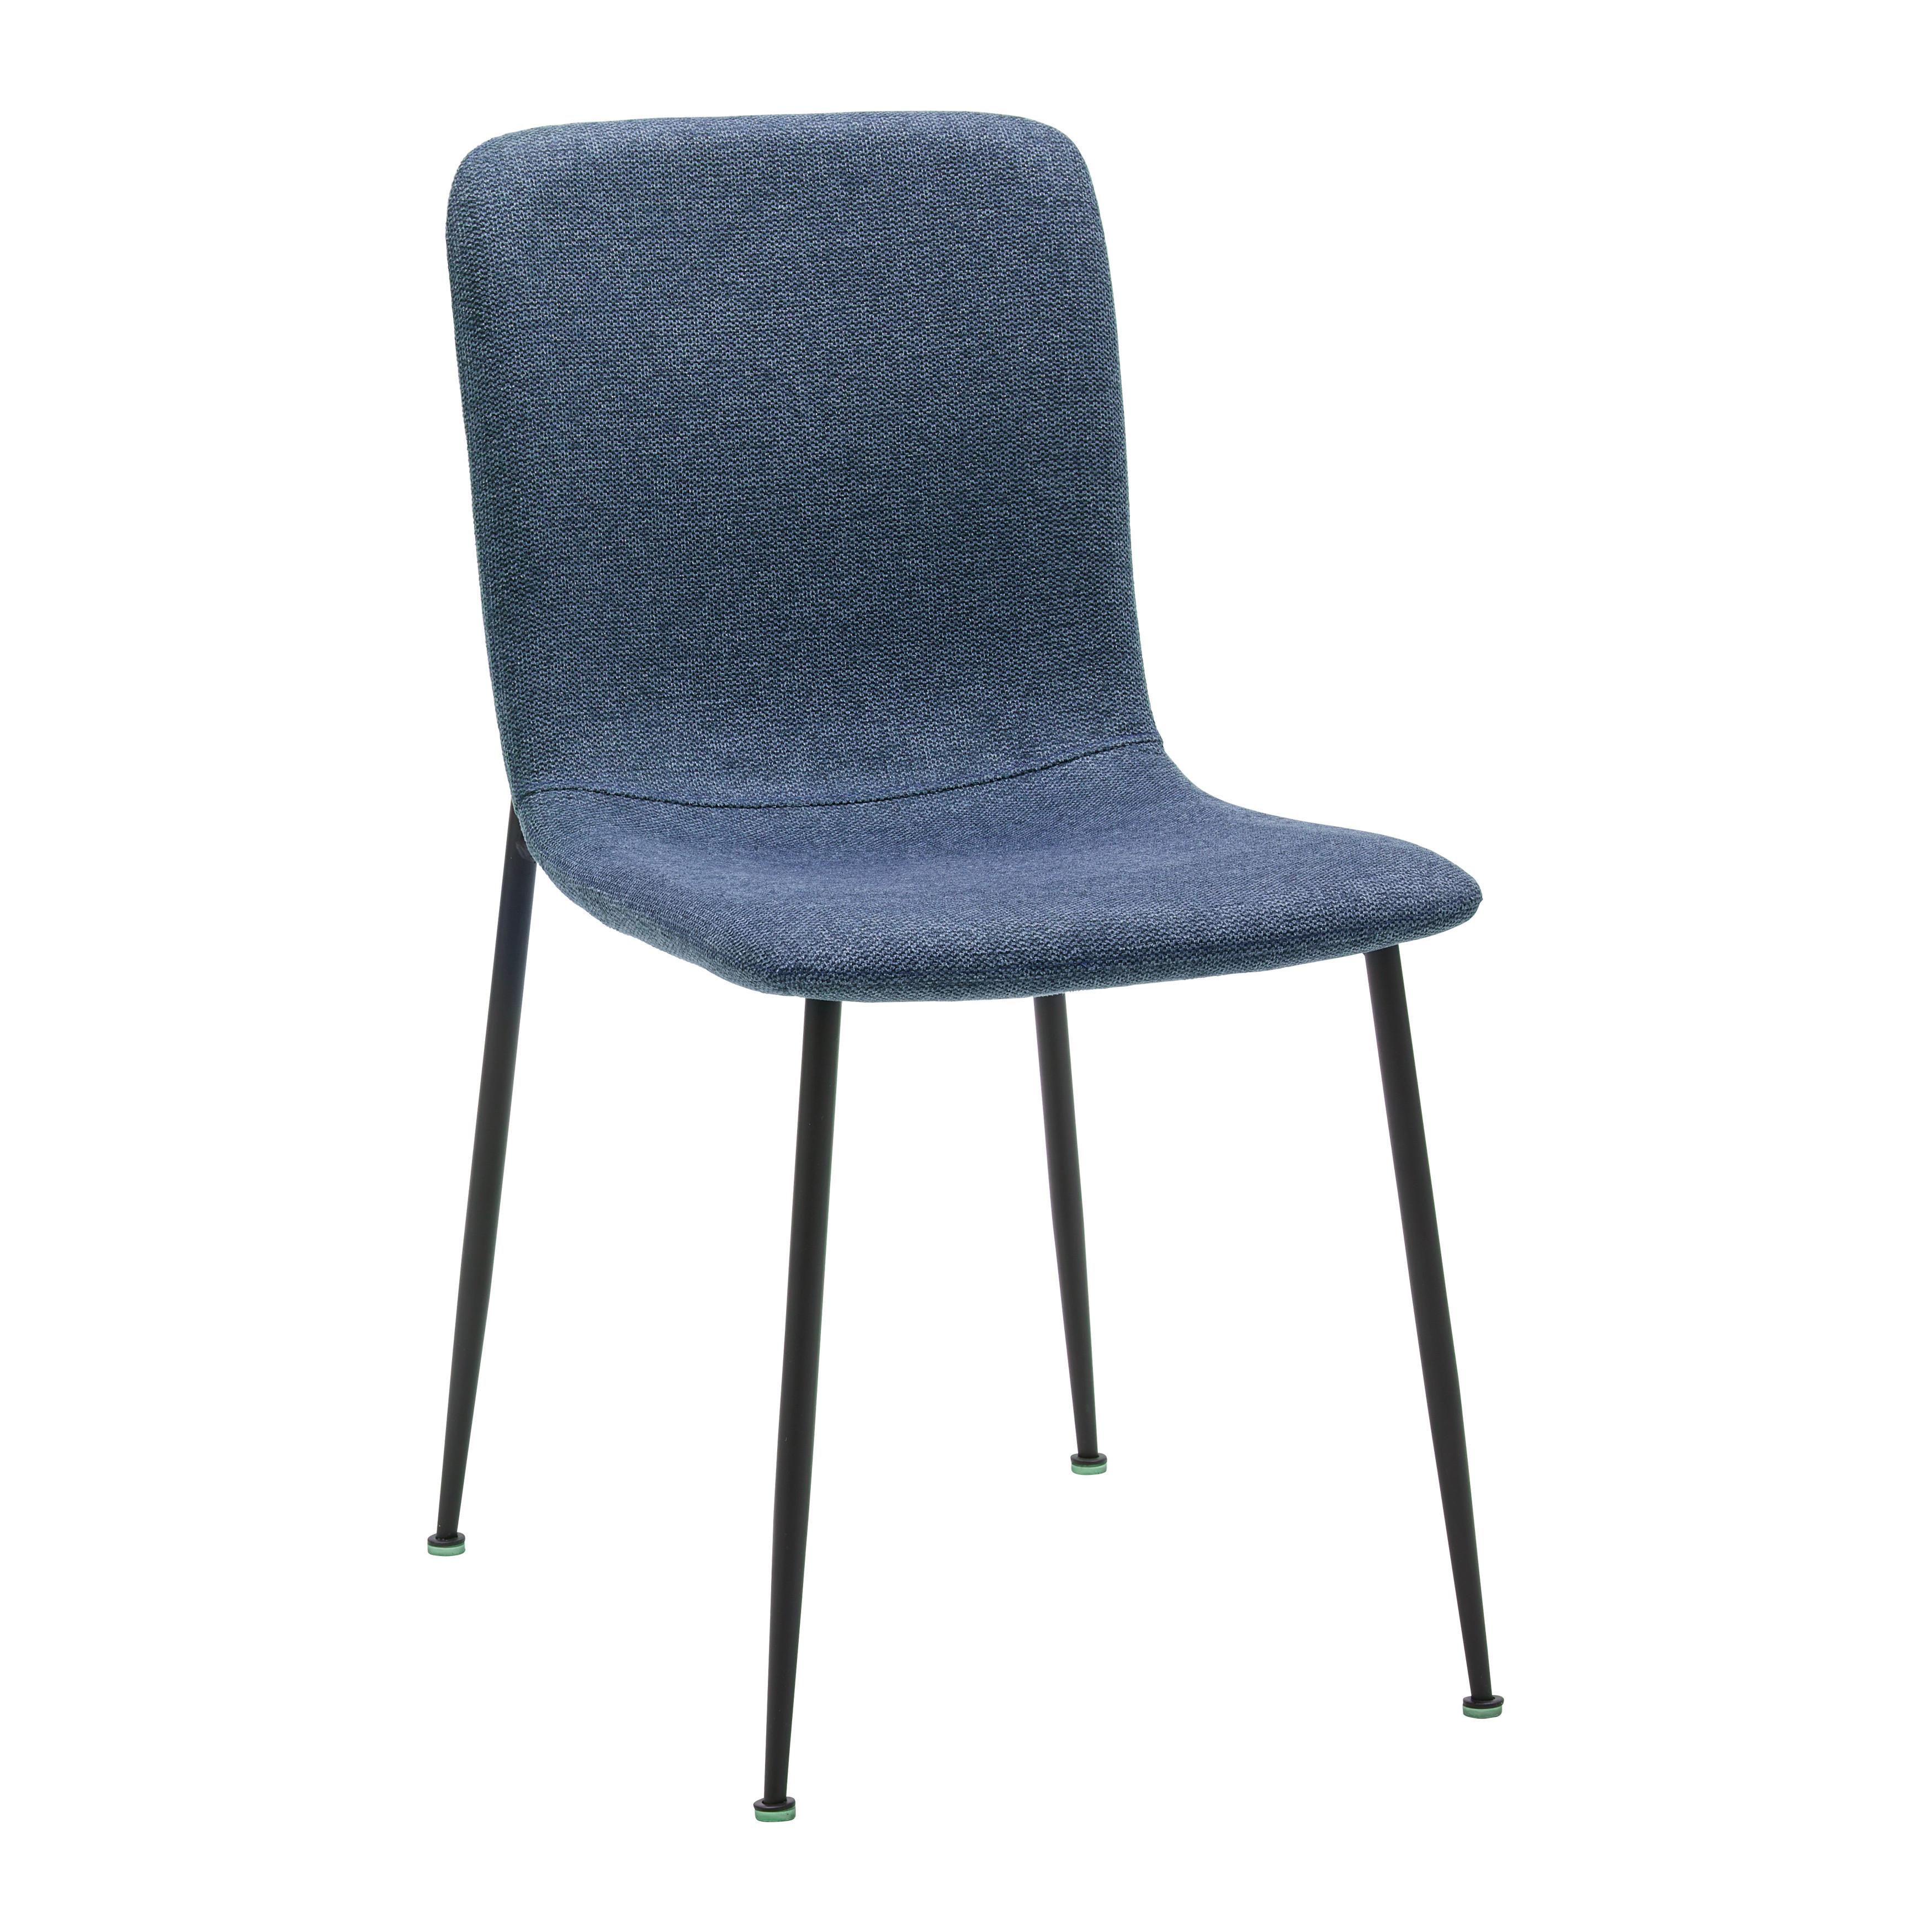 Jídelní Židle Nele Modrá - modrá/černá, Moderní, kov/dřevo (43/83/56cm) - P & B